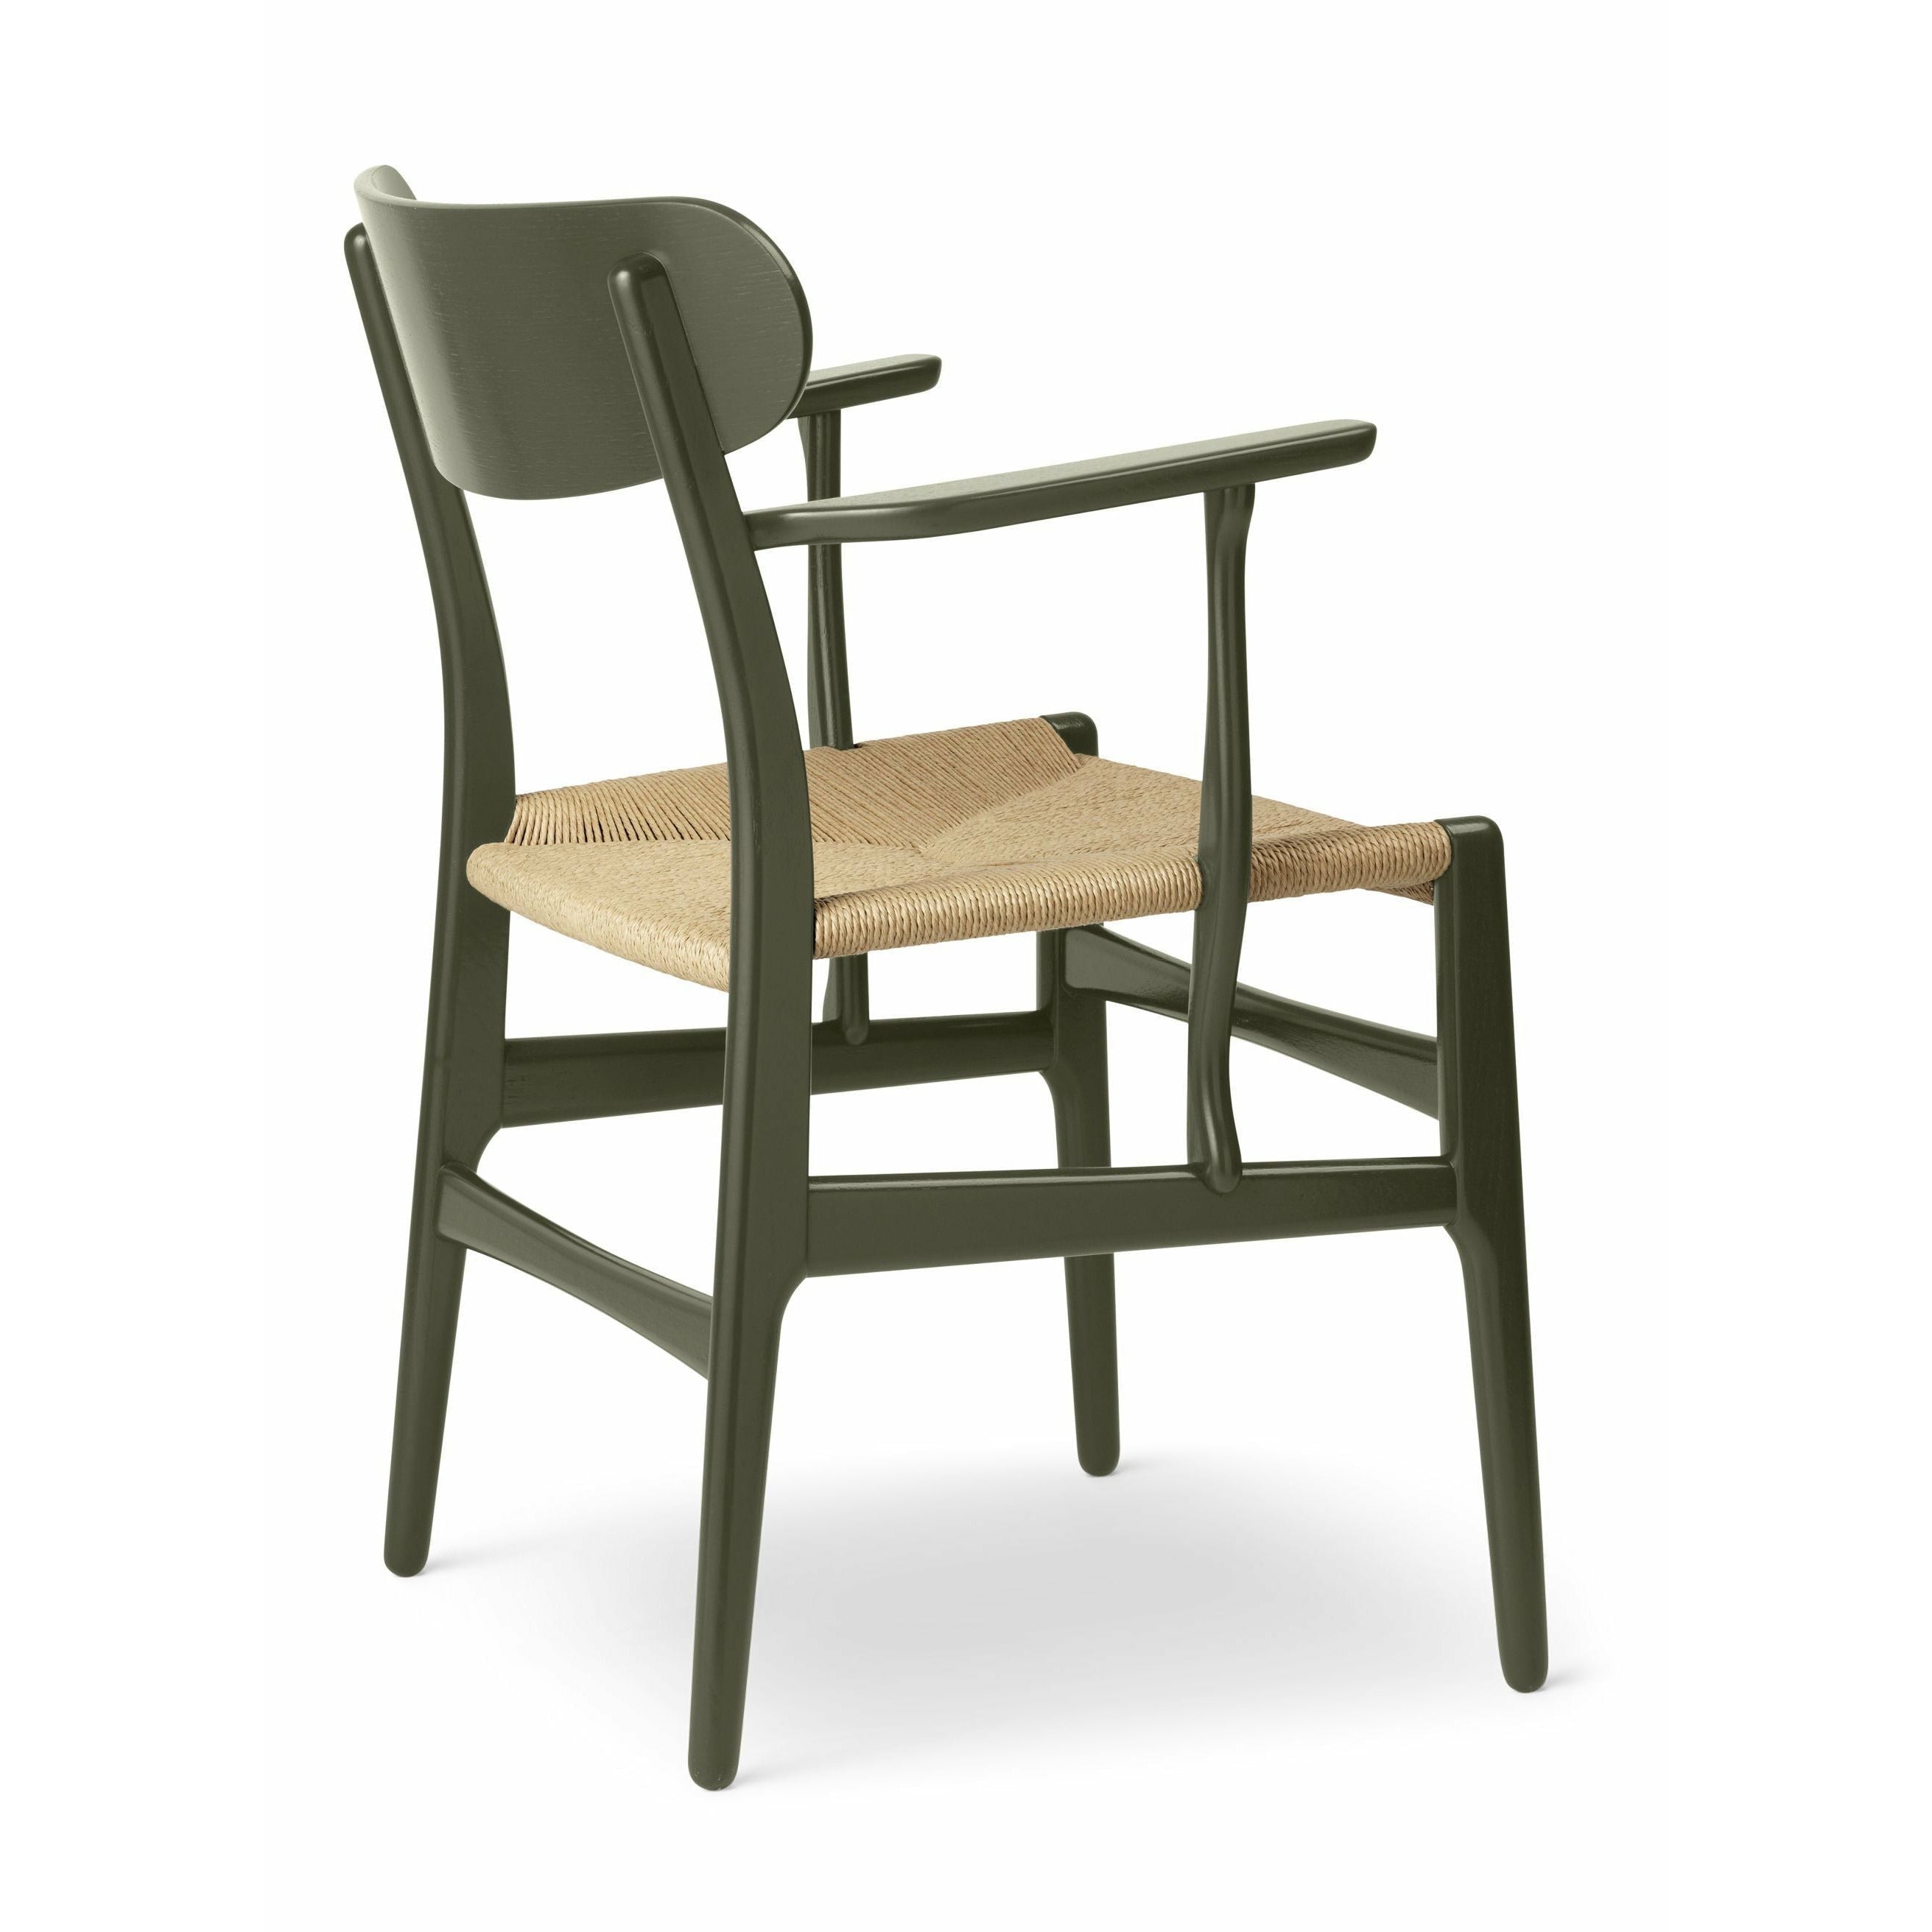 Carl Hansen CH26 -stol ek, tånggrön/natur sammanslagning - specialutgåva